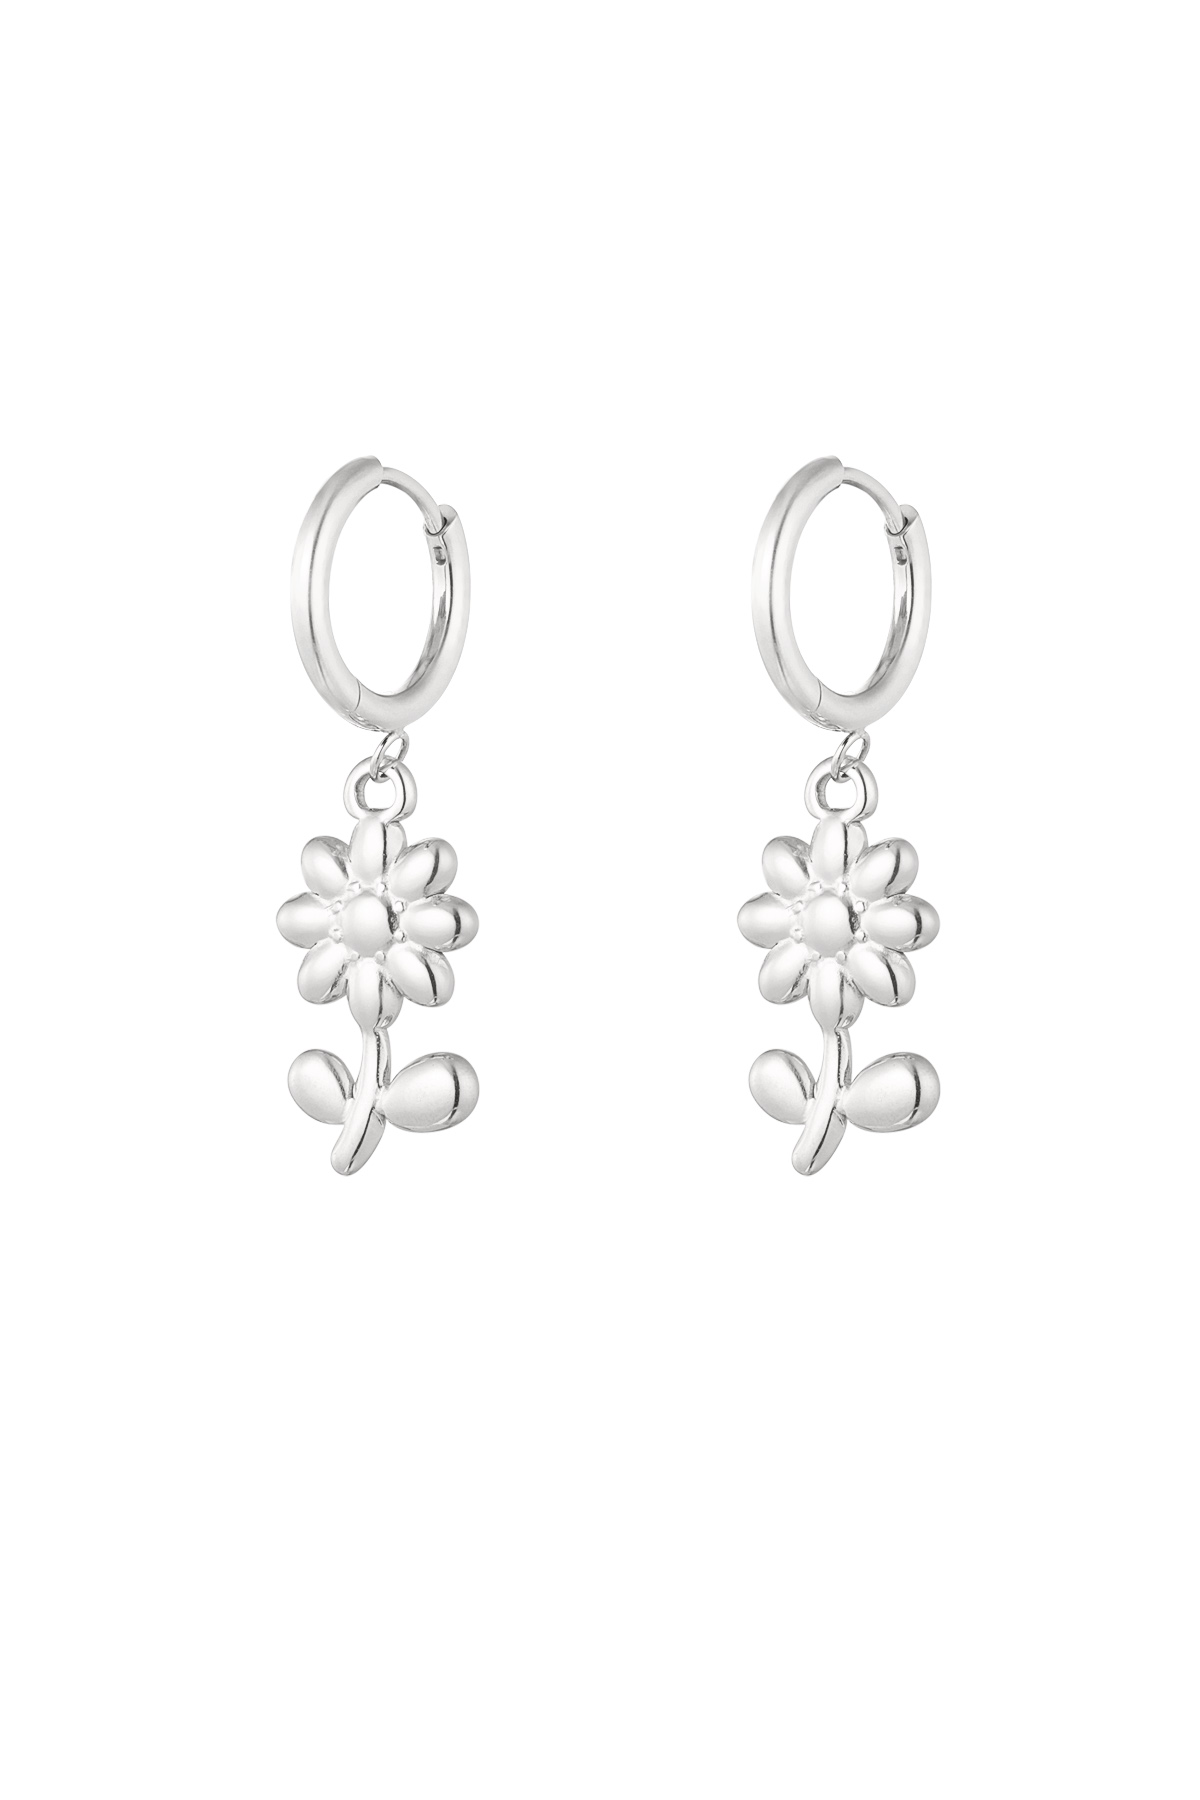 Einfache Ohrringe mit Blumenanhängern – Silber 